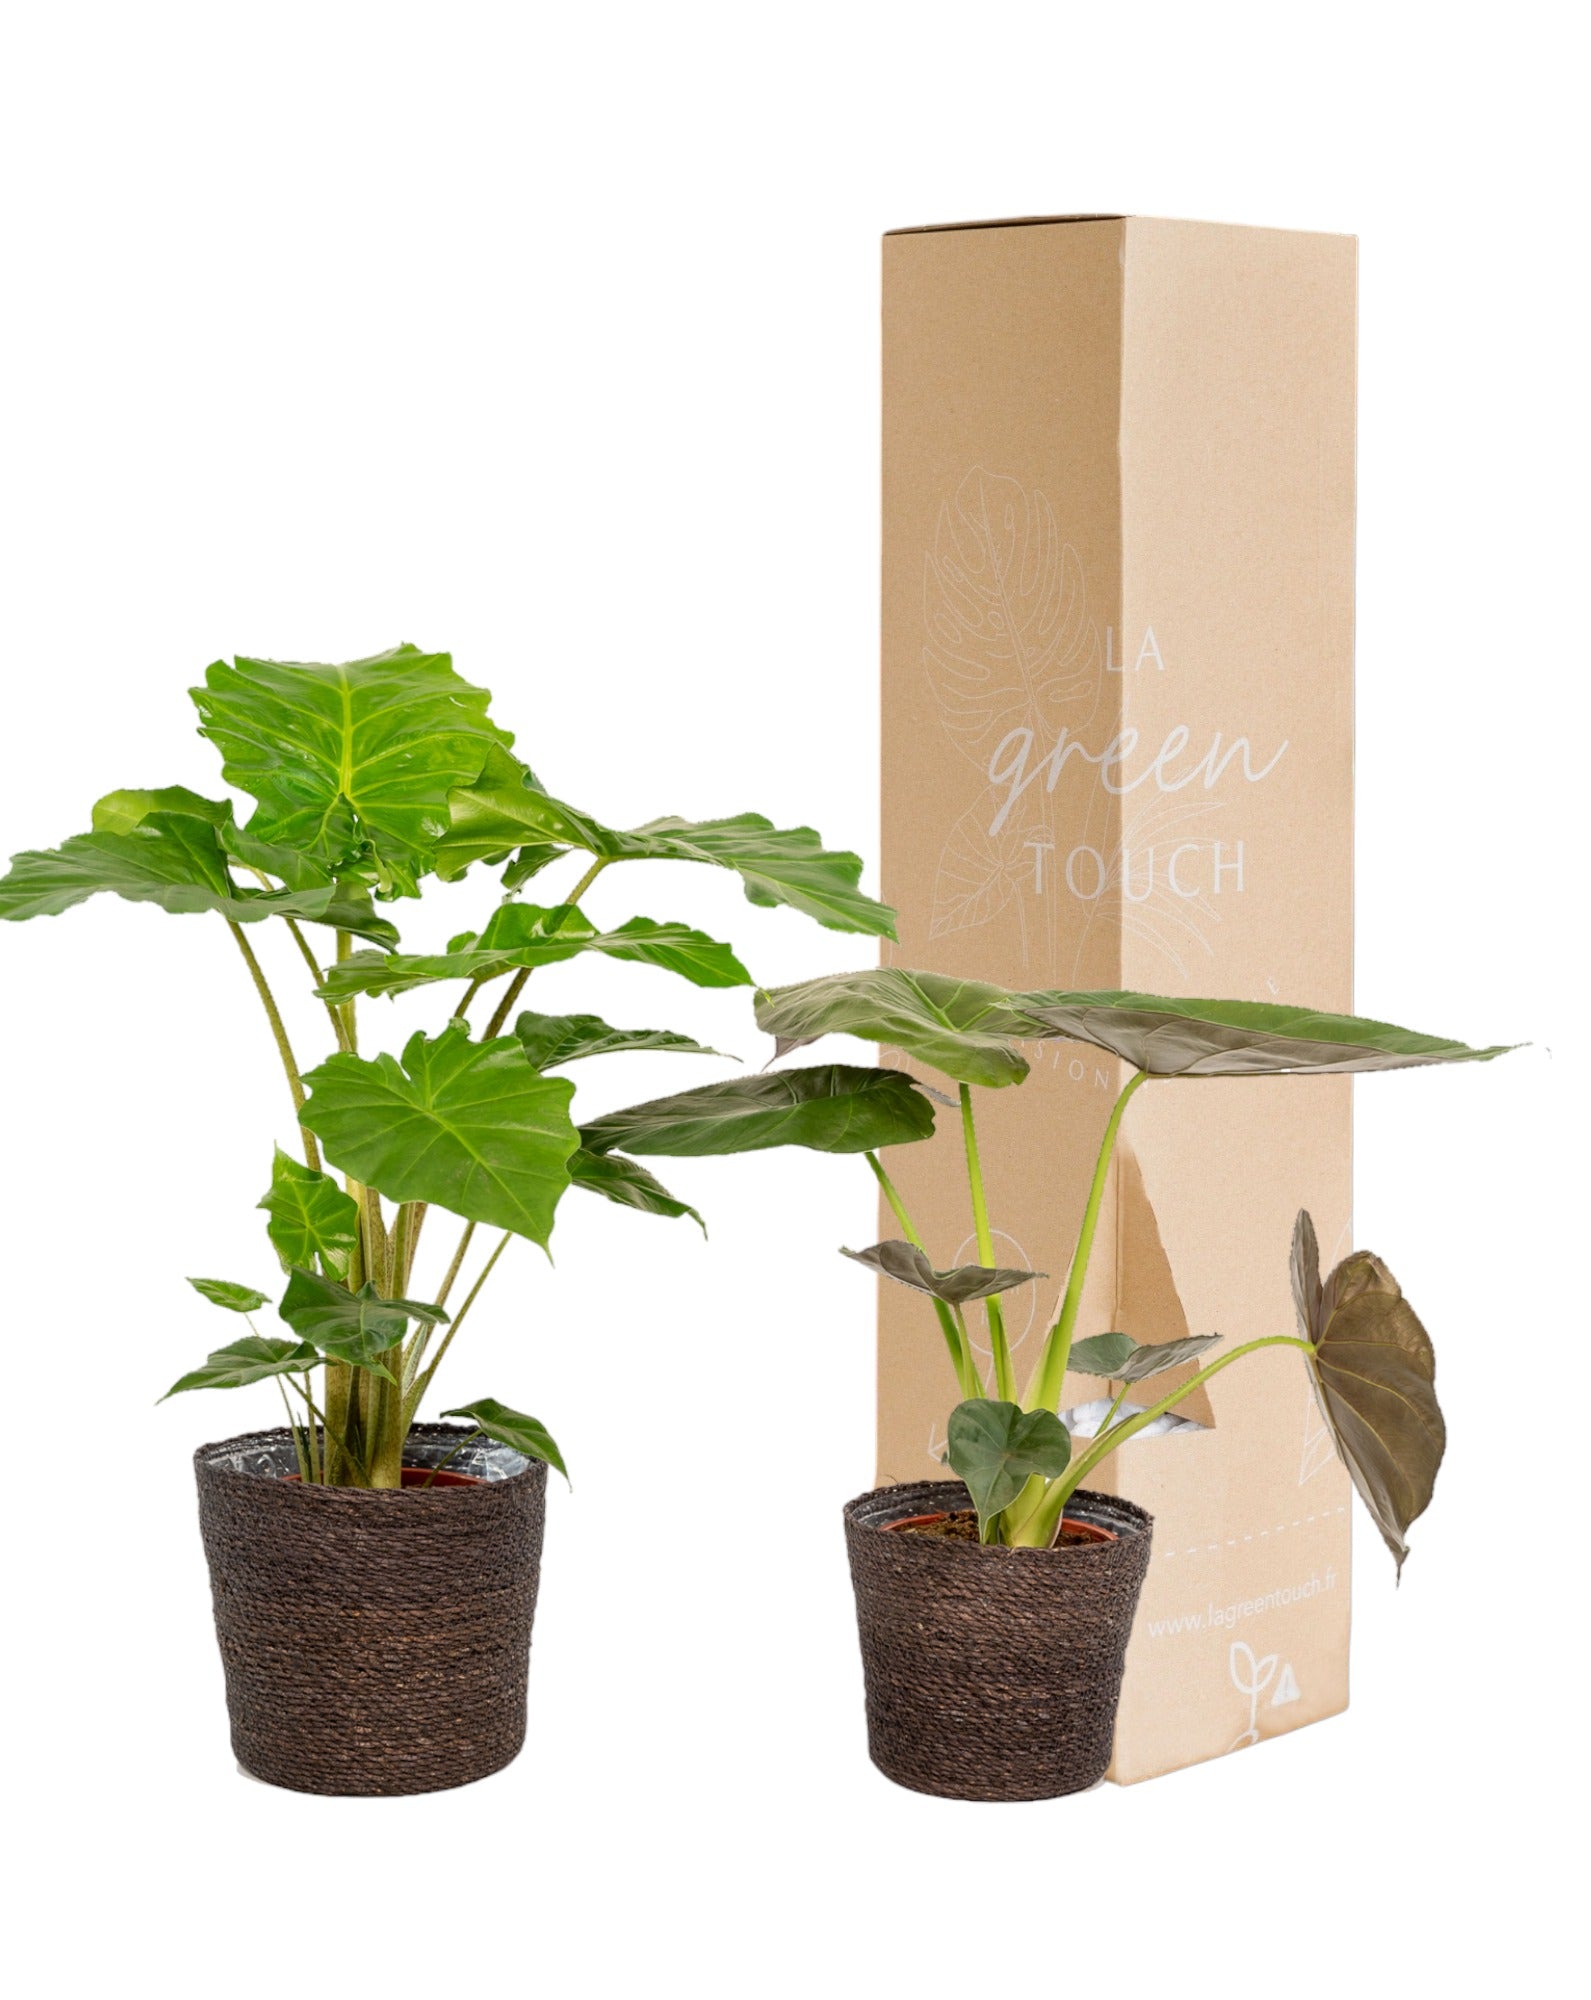 Plante d'intérieur - alocasia portodora - lot de 2 plantes - coffret cadeau 80.0cm